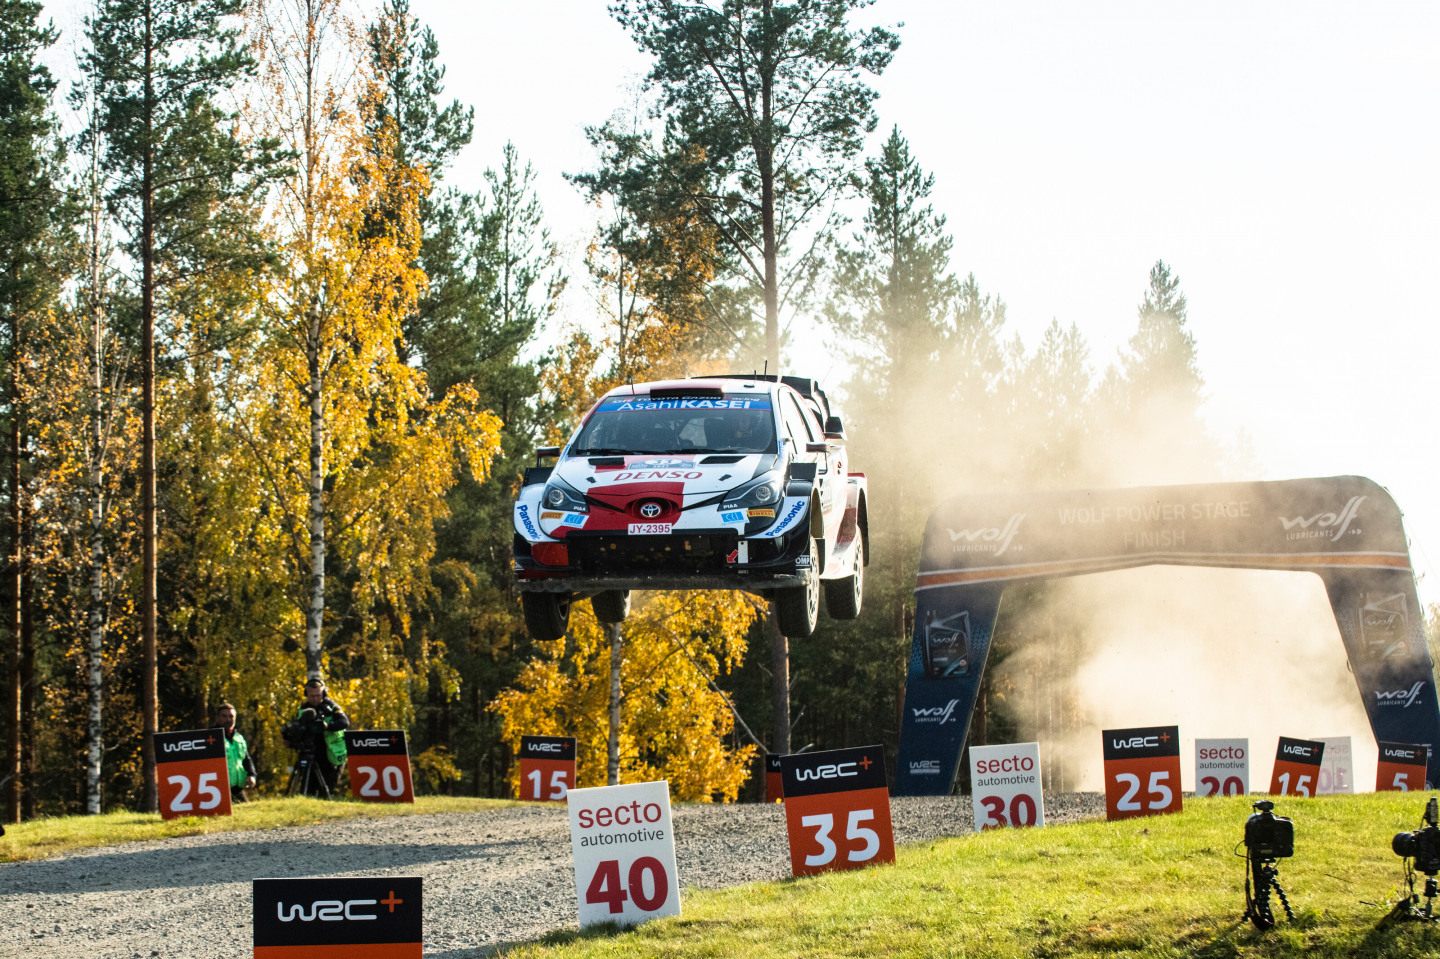 Ралли «Тысяча озёр» возвращается на свое исконное место в календаре в WRC – на август © Jaanus Ree / Red Bull Content Pool